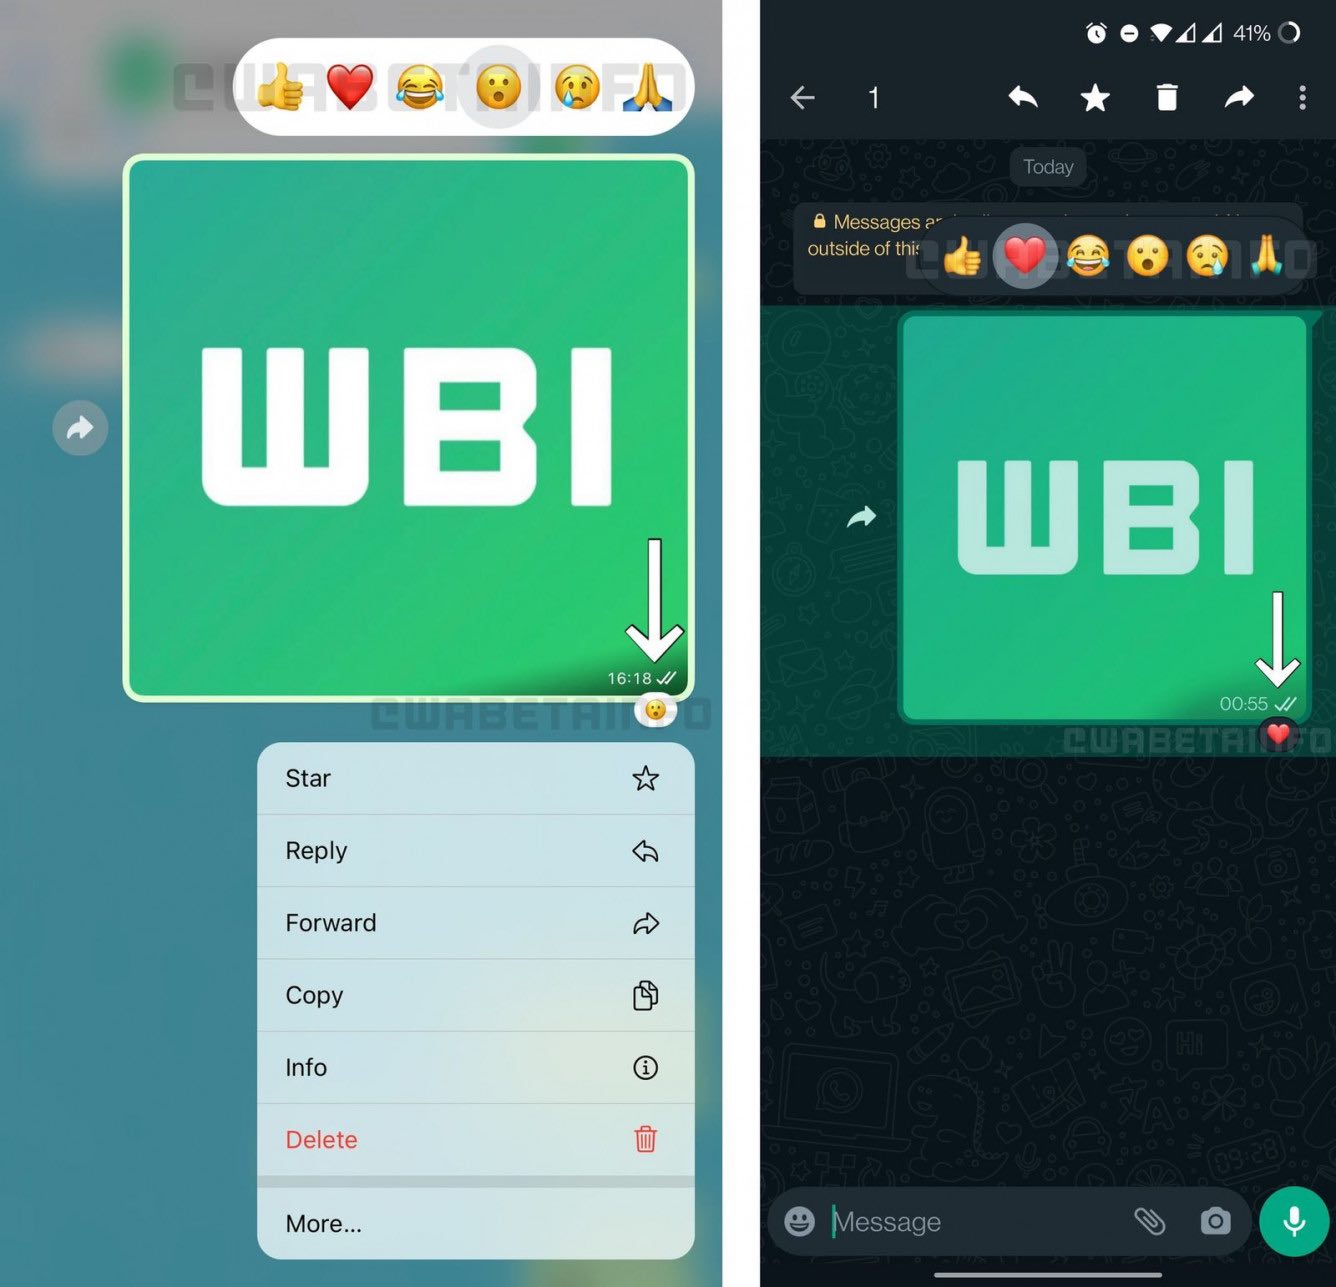 WhatsApp testuje reakcje na wiadomości w stylu iMessage ciekawostki WhatsApp  Twórcy komunikatora WhatsApp zaczęli testować w swojej aplikacji reakcje na wiadomości w stylu iMessage. Jak Wam się podoba ta nowość? wht